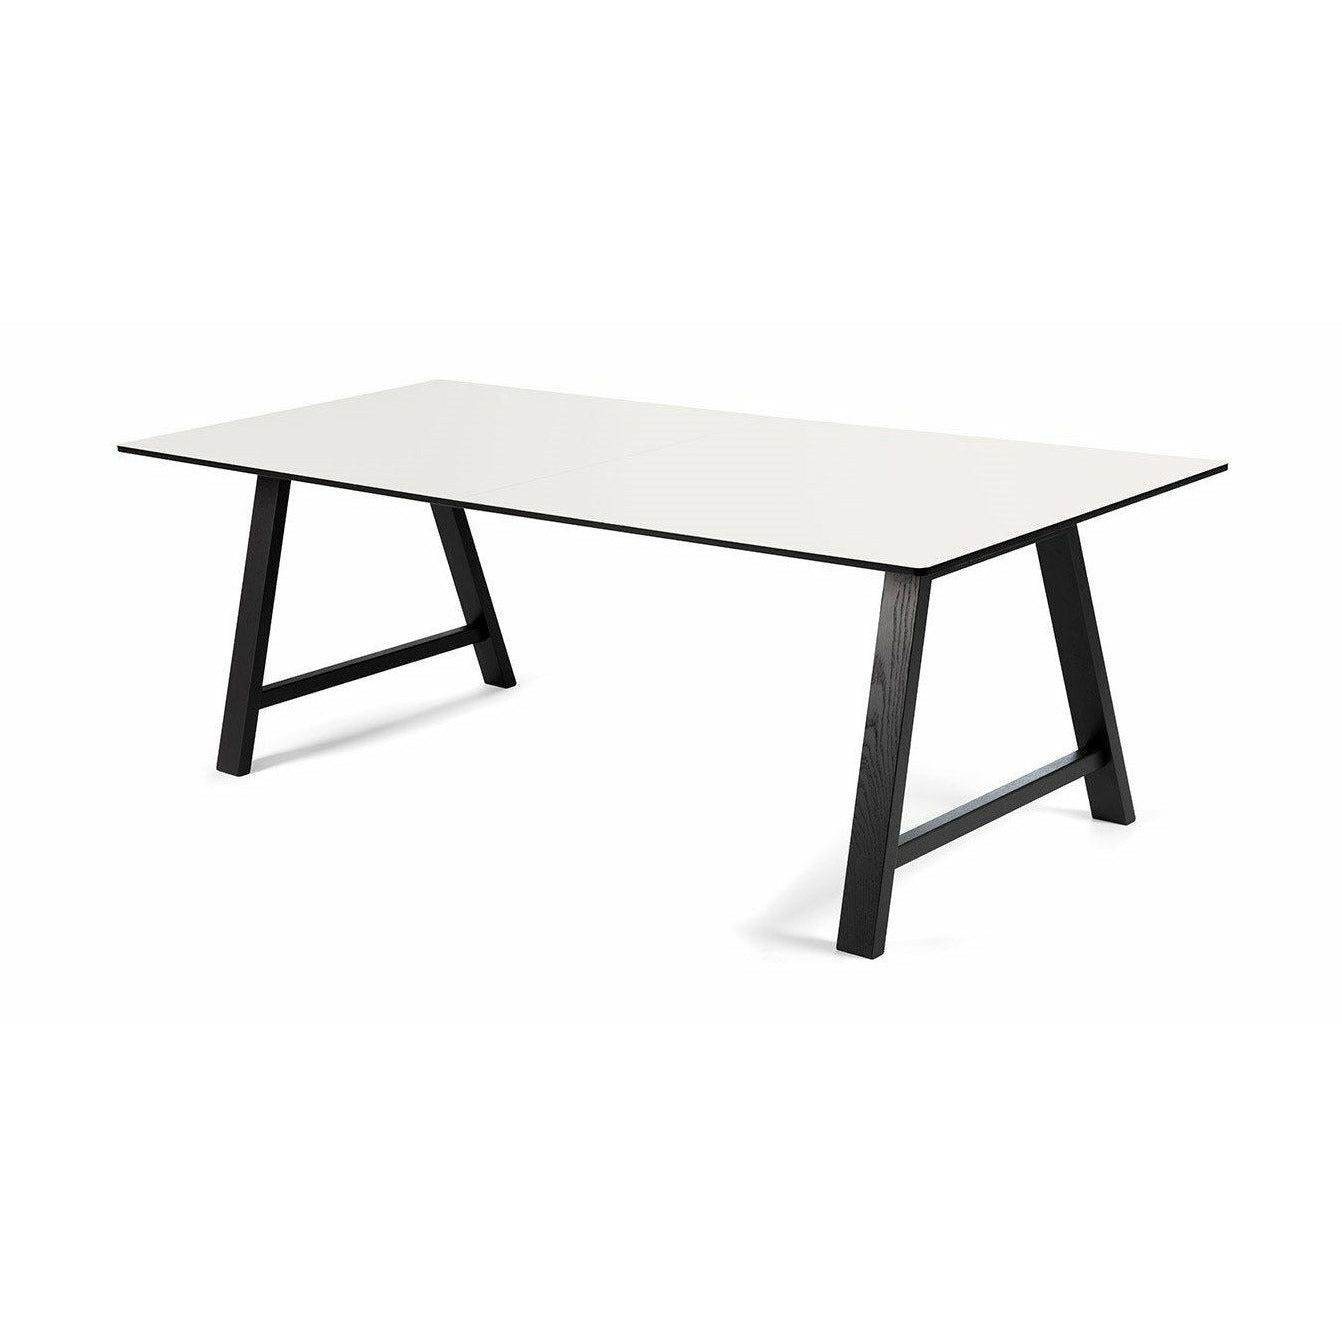 Andersen Furniture T1 Uitbreidbare tabel, wit laminaat, zwart frame, 160 cm